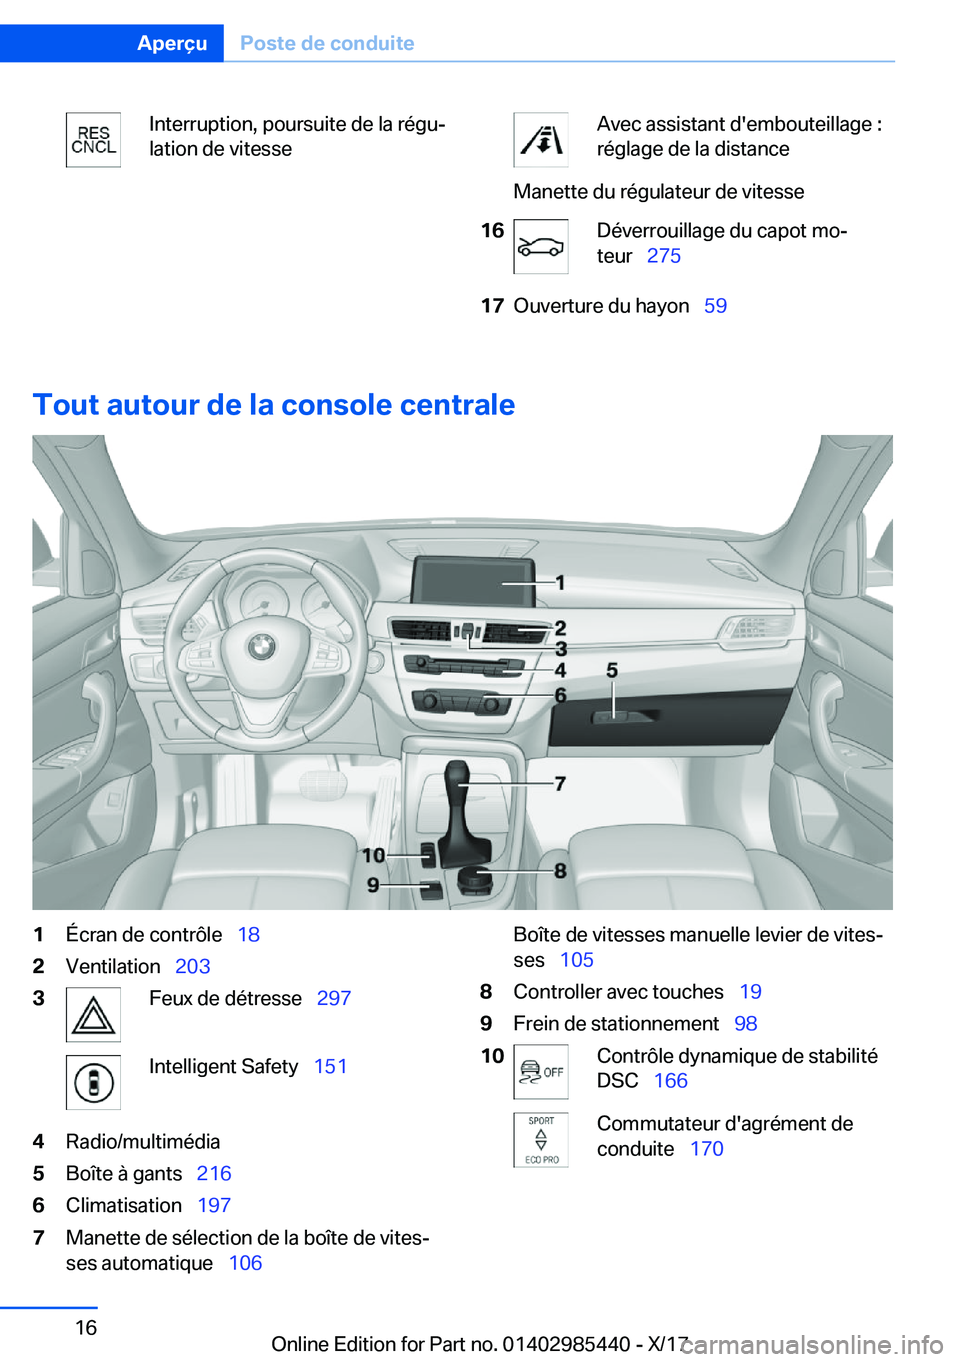 BMW X1 2018  Notices Demploi (in French) �I�n�t�e�r�r�u�p�t�i�o�n�,� �p�o�u�r�s�u�i�t�e� �d�e� �l�a� �r�é�g�uj
�l�a�t�i�o�n� �d�e� �v�i�t�e�s�s�e�A�v�e�c� �a�s�s�i�s�t�a�n�t� �d�'�e�m�b�o�u�t�e�i�l�l�a�g�e� �:
�r�é�g�l�a�g�e� �d�e� �l